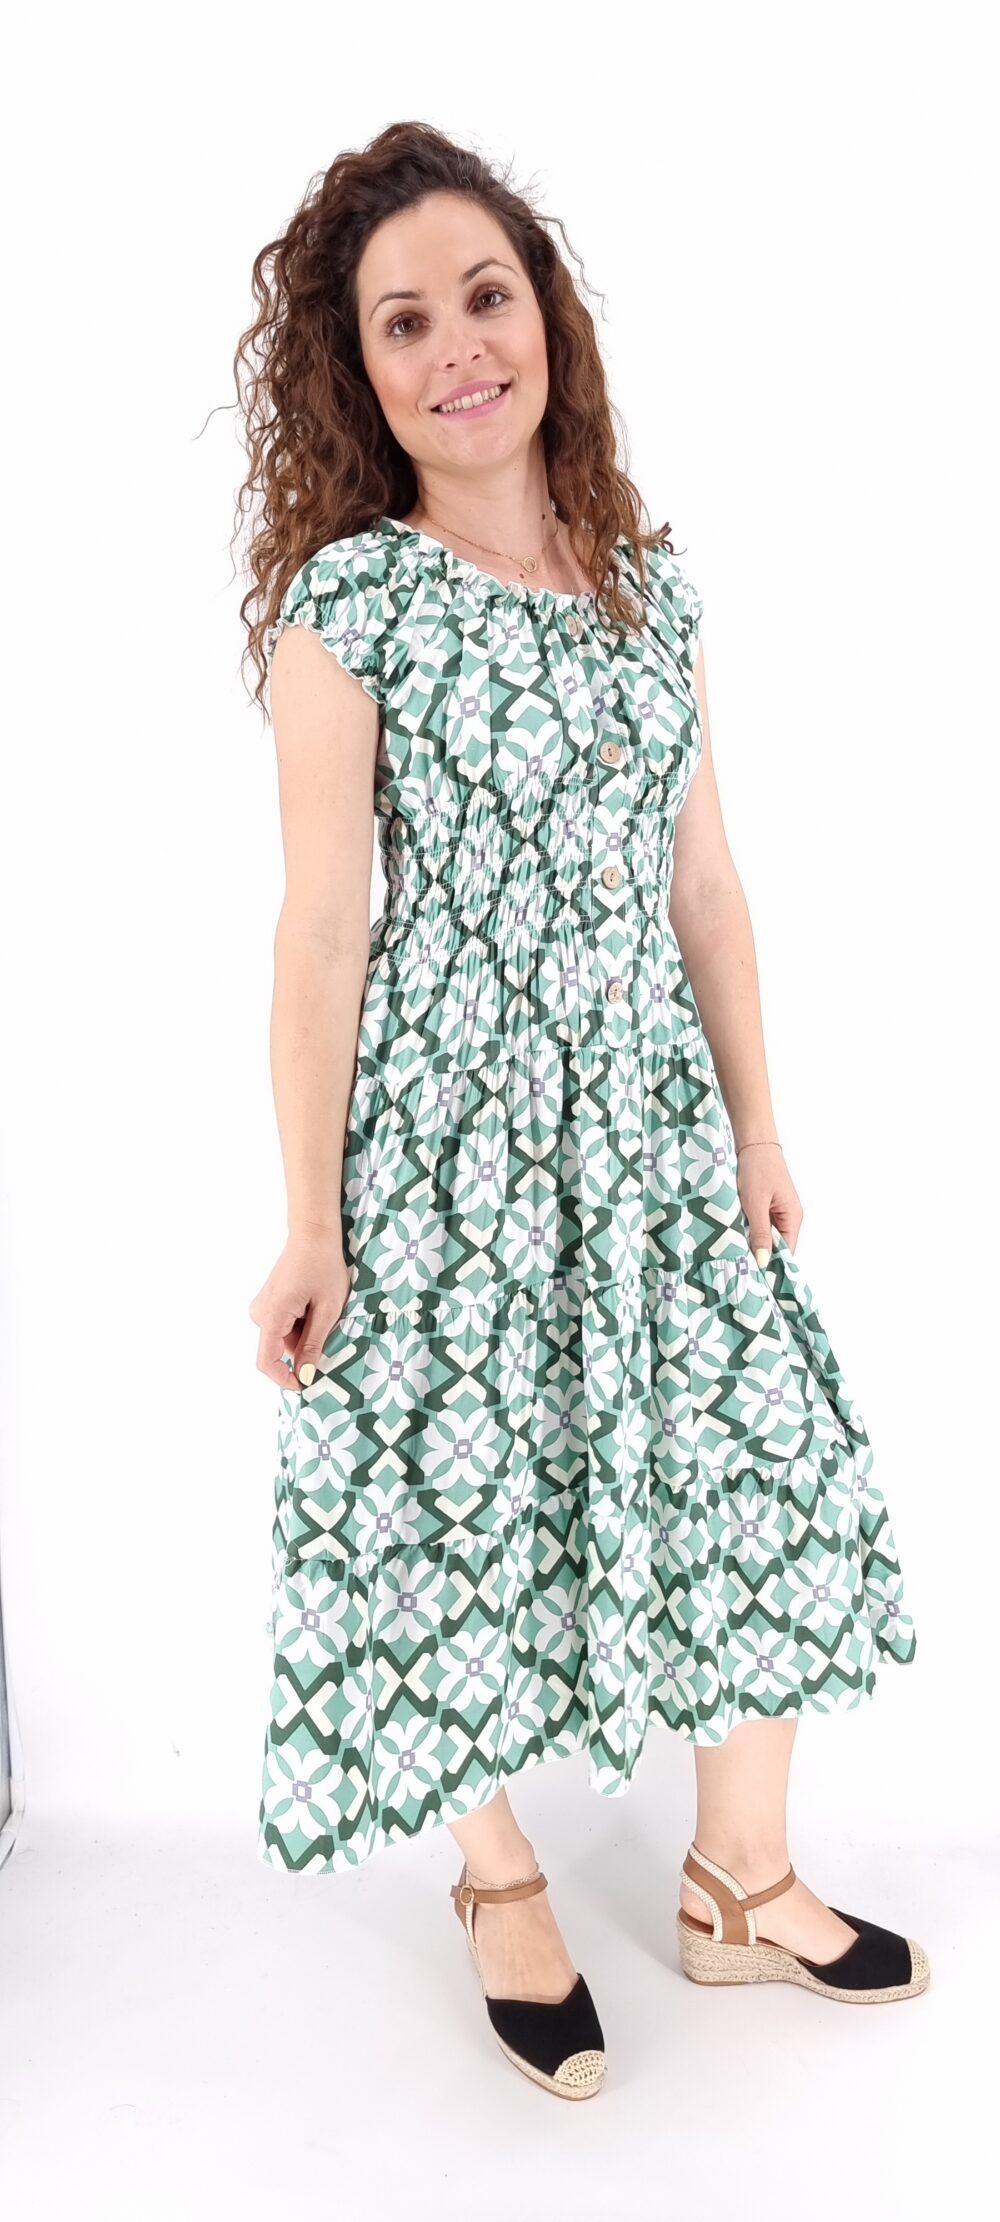 Φόρεμα με σχέδια midi με σφιγγοφωλιά και διακοσμητικά κουμπιά πράσινο